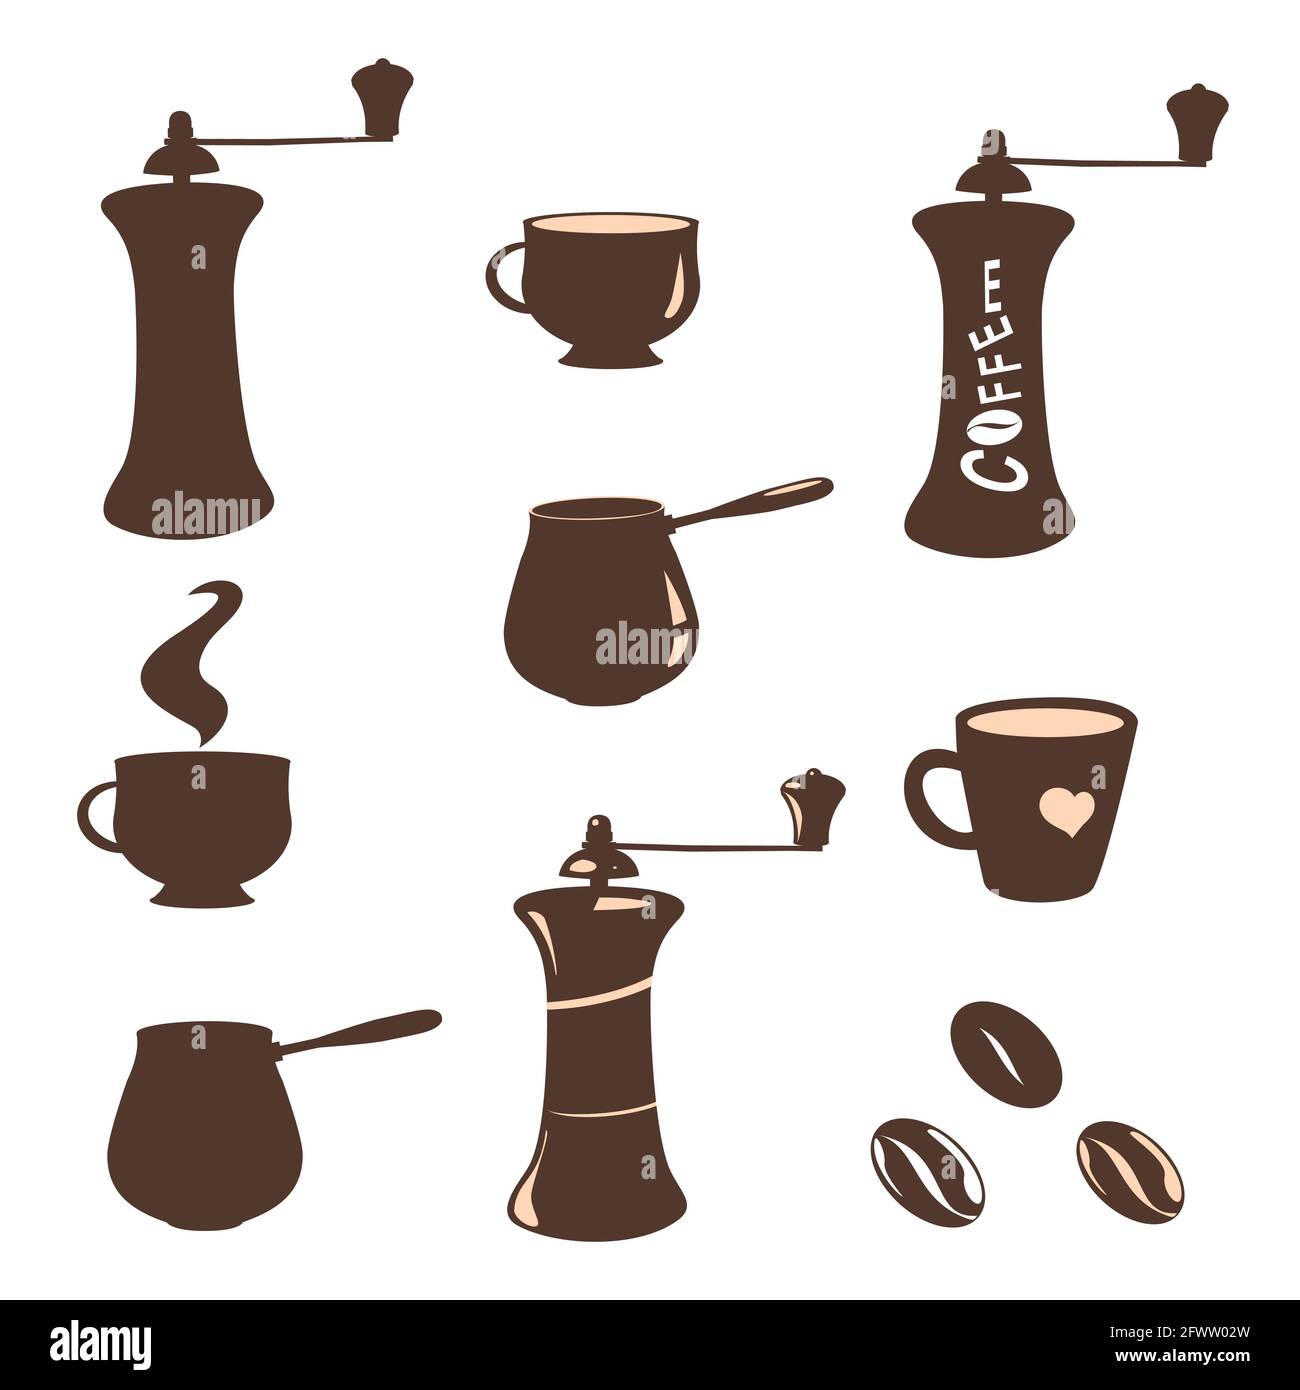 Set von Bildern und Silhouetten von Kaffeebohnen, Tassen, Kaffeemühlen, Kaffeemaschinen. Elemente für Design auf weißem Hintergrund. Stock Vektor